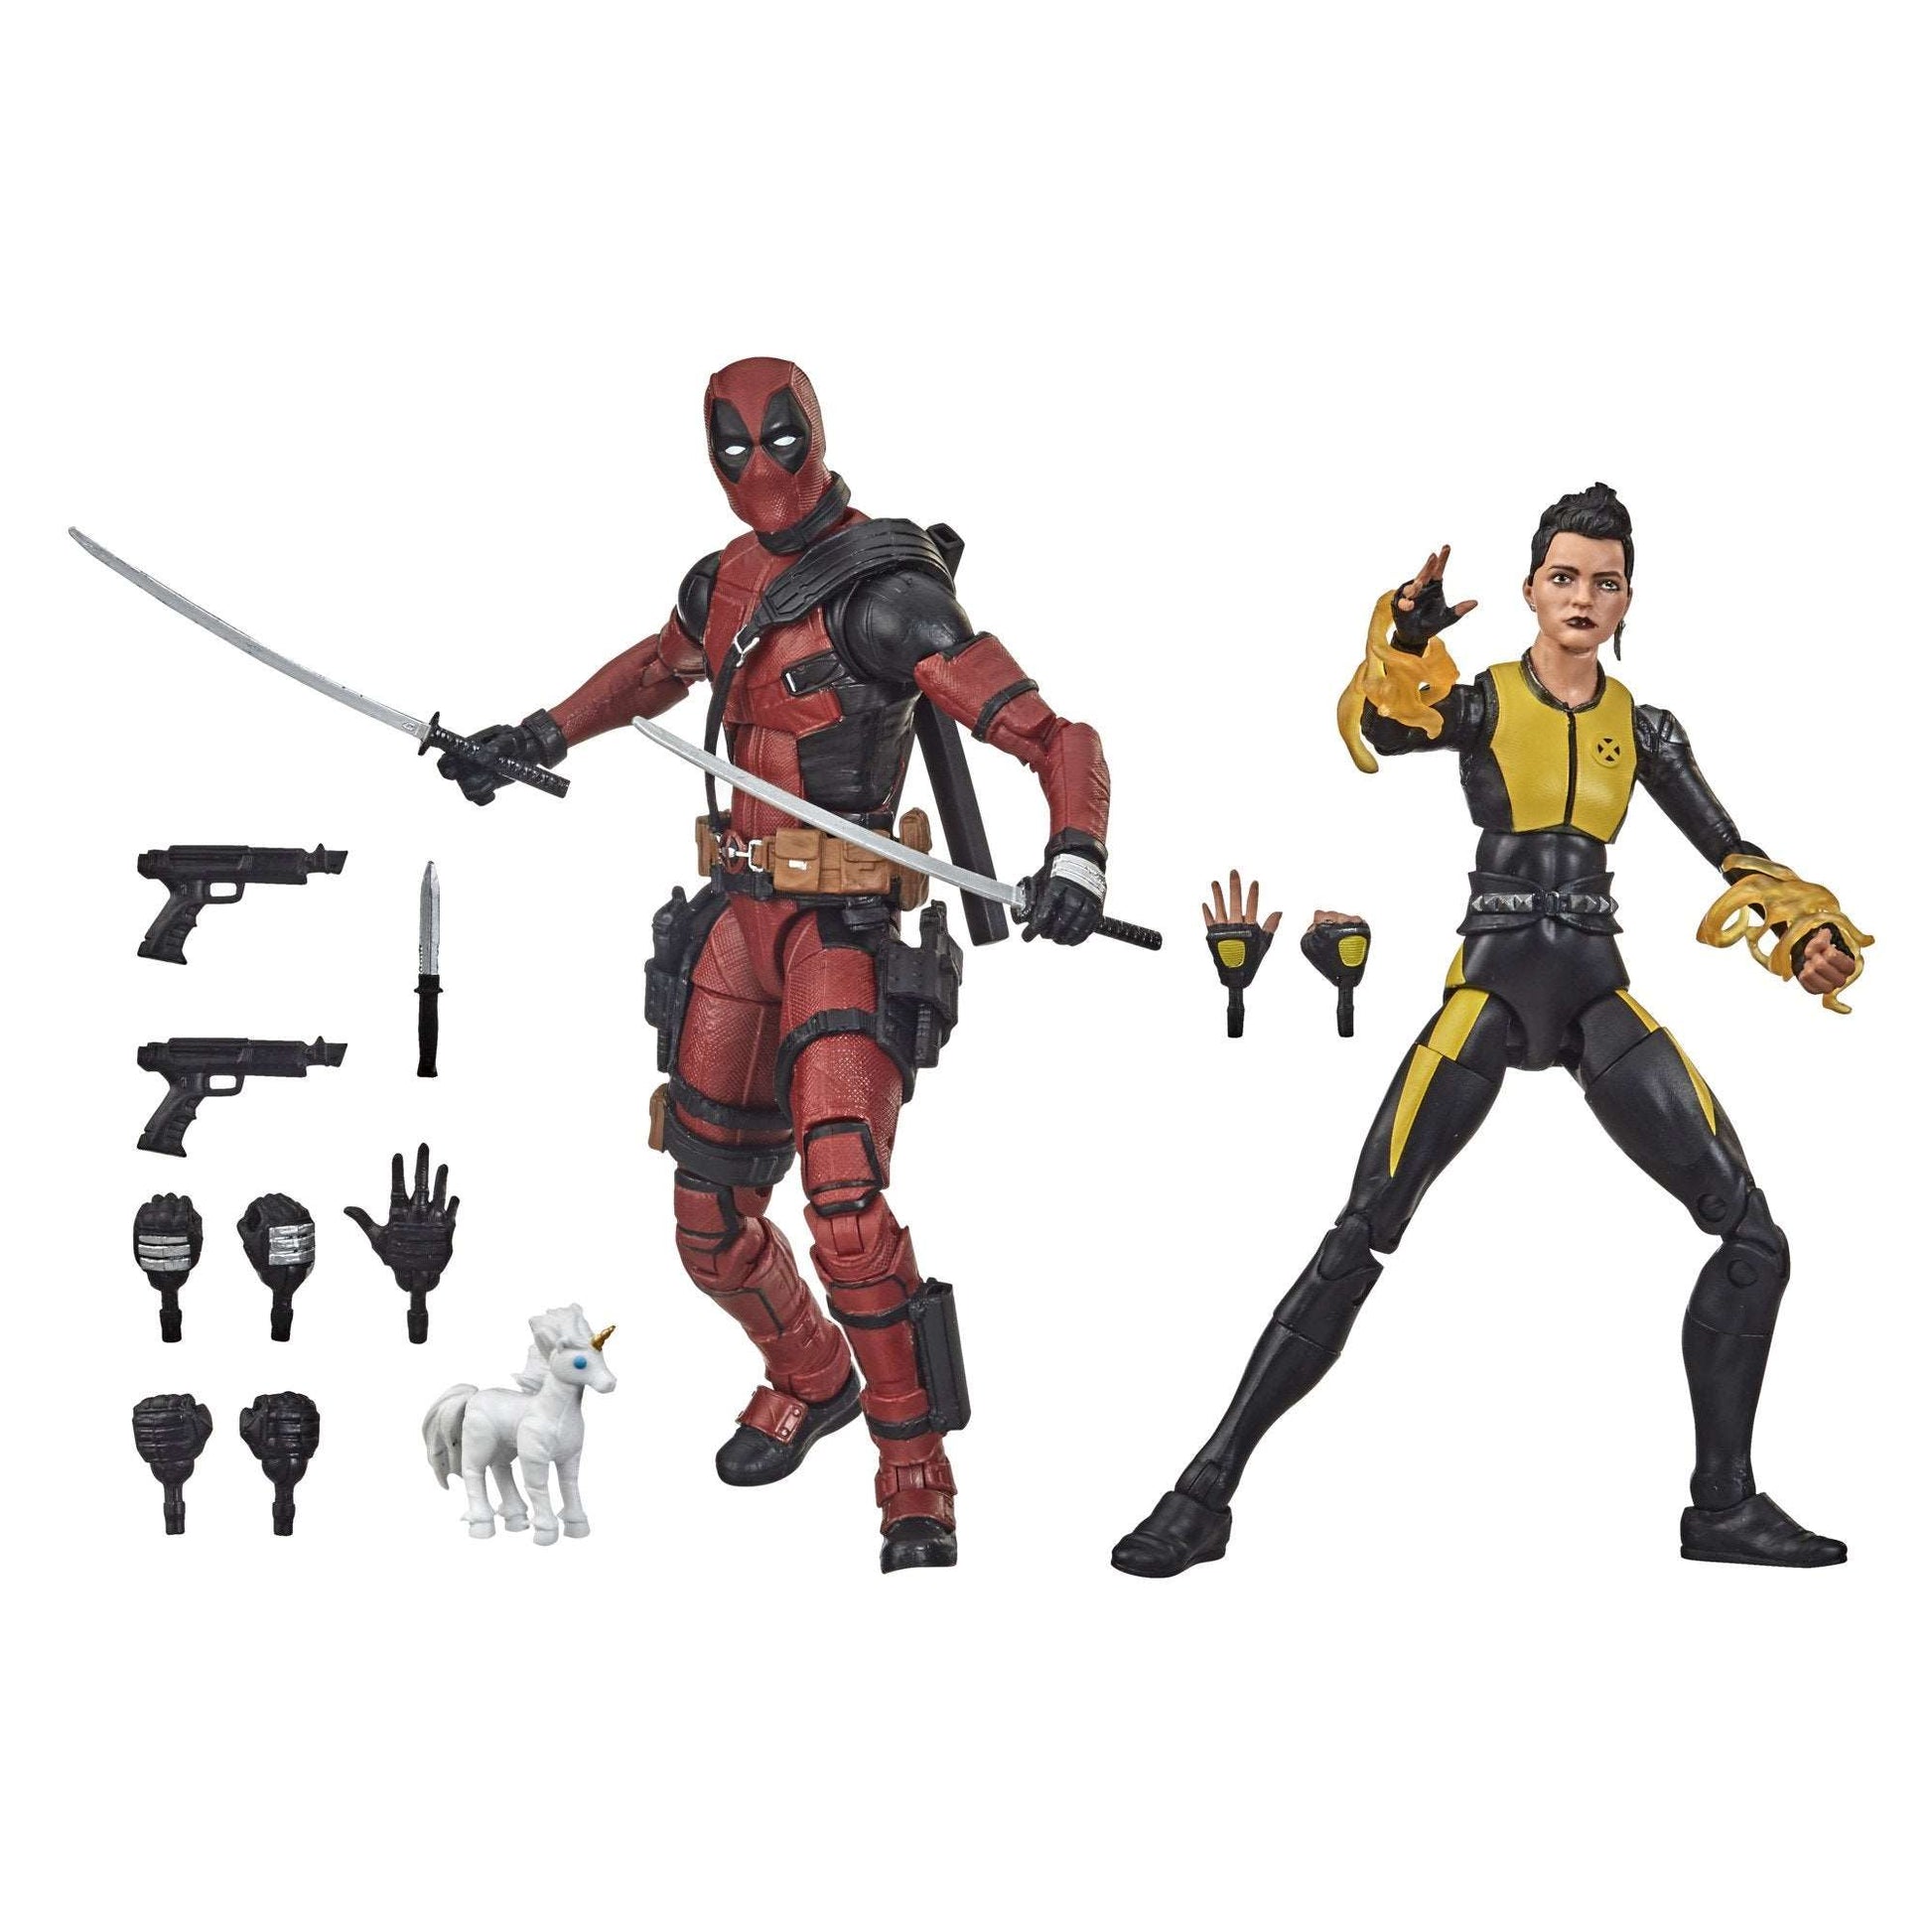 Marvel Legends Series Deadpool and Negasonic Teenage Warhead figures and accessories